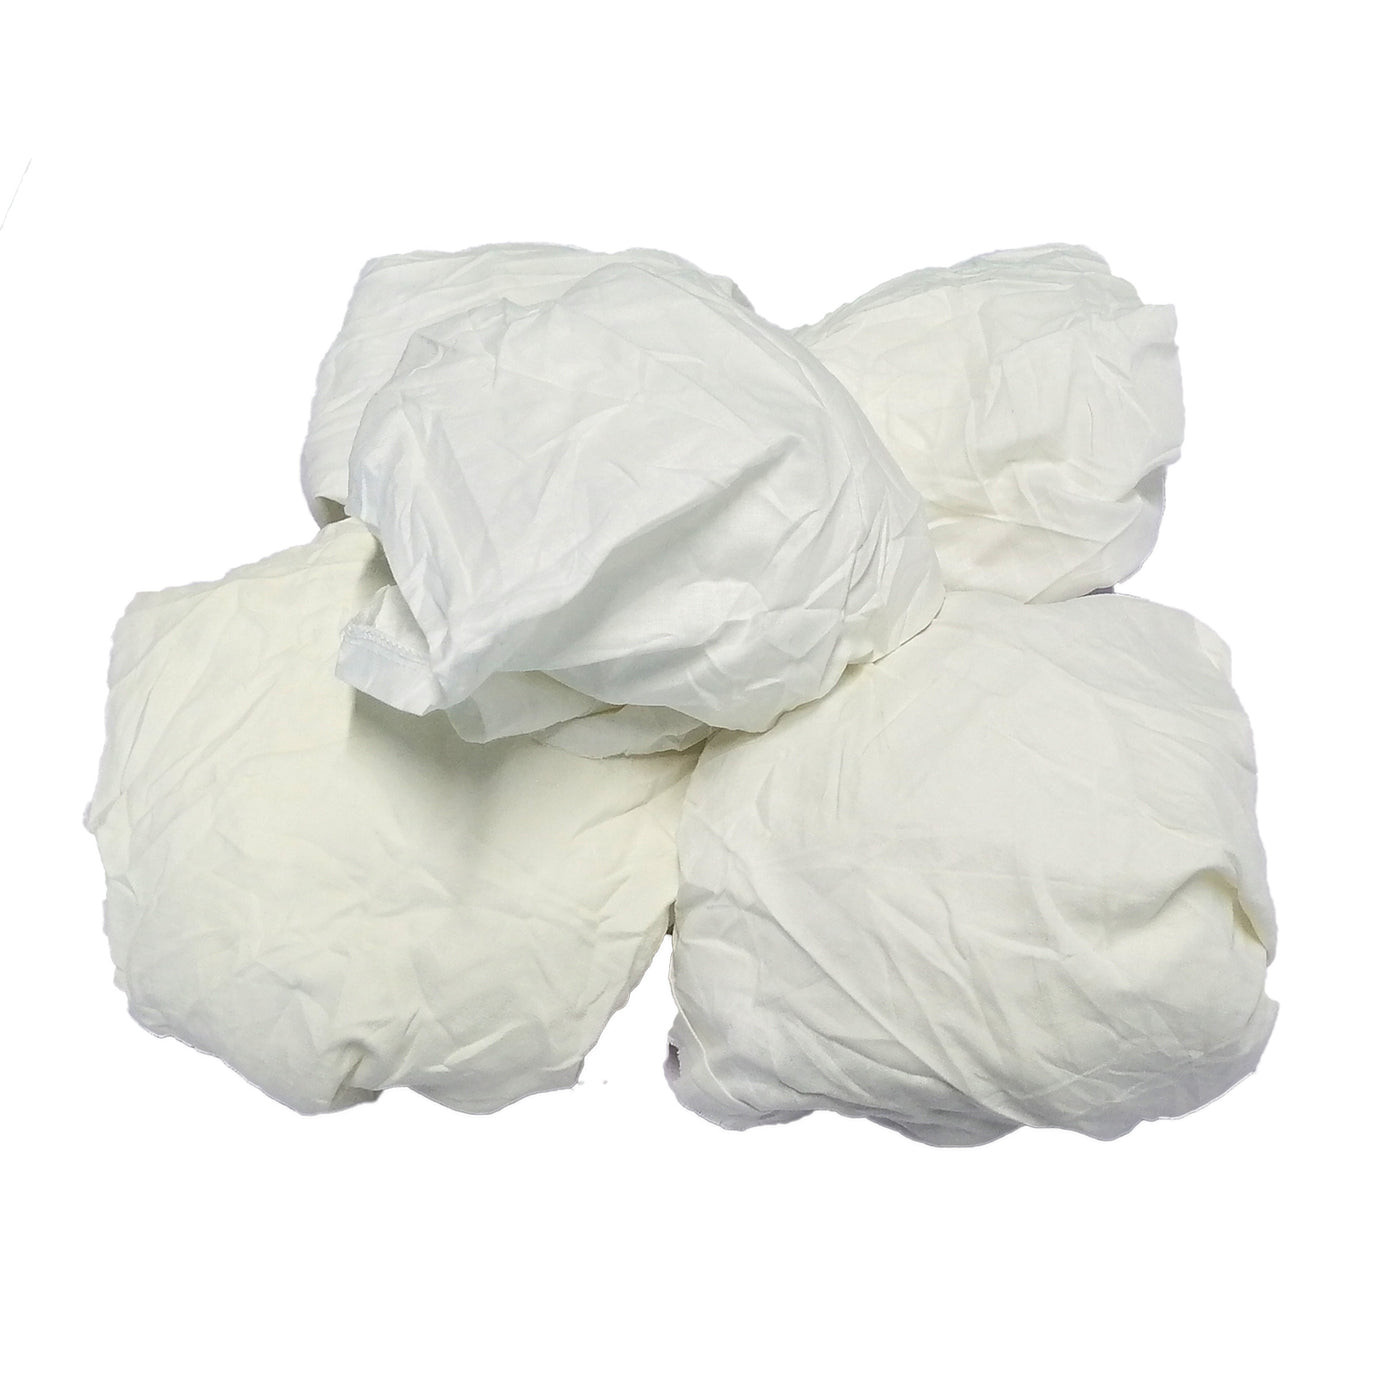 Cotton Rags Bulk for Sale